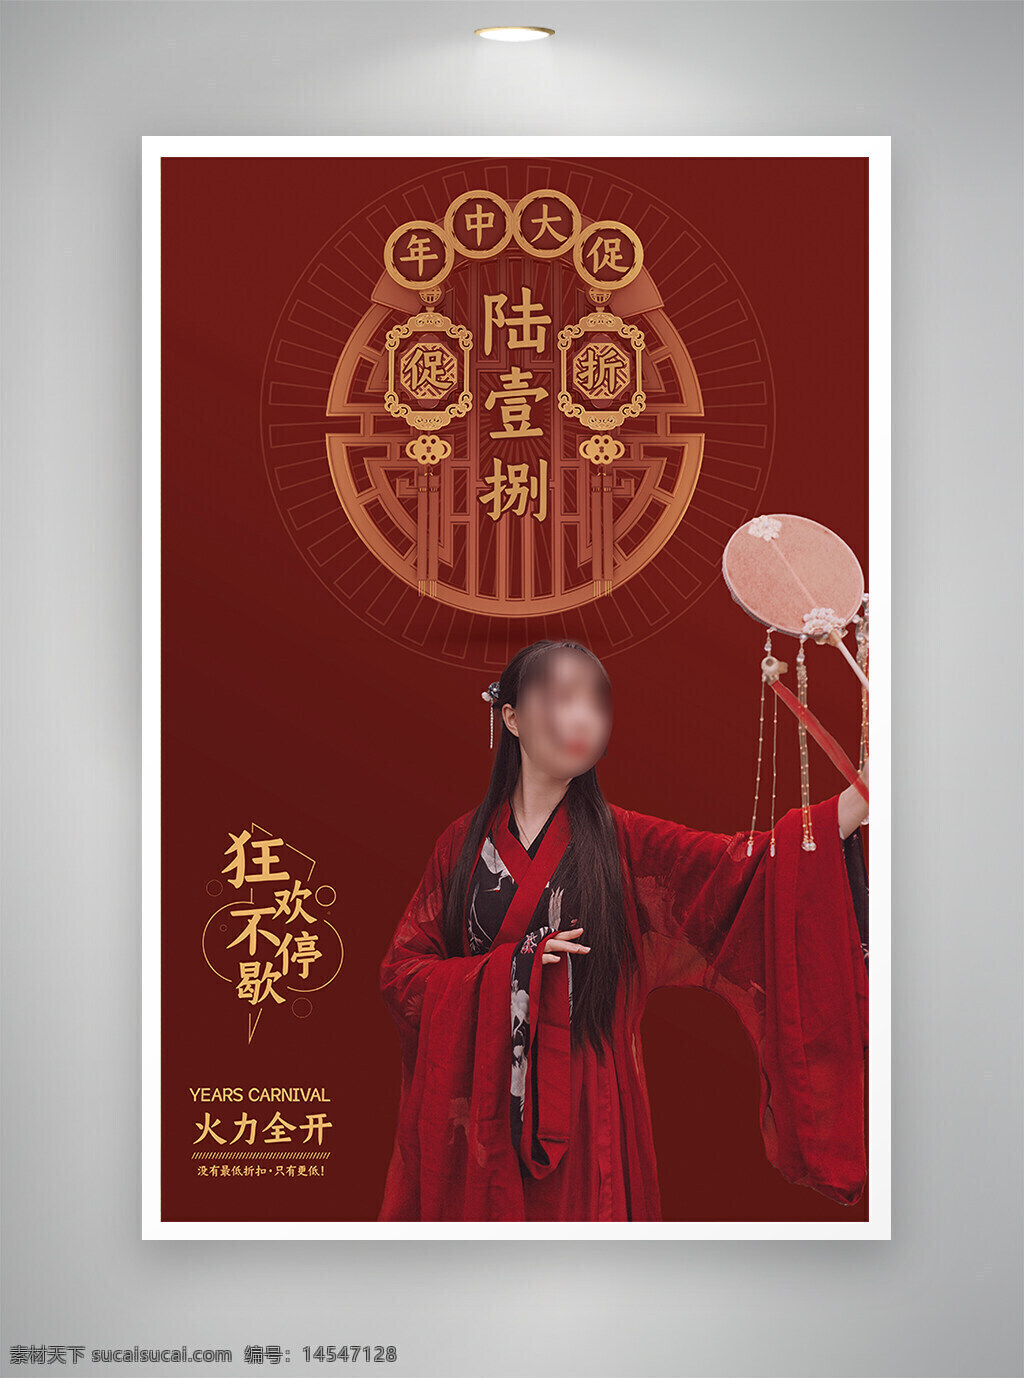 中国风海报 古风海报 节日海报 促销海报 年终大促海报